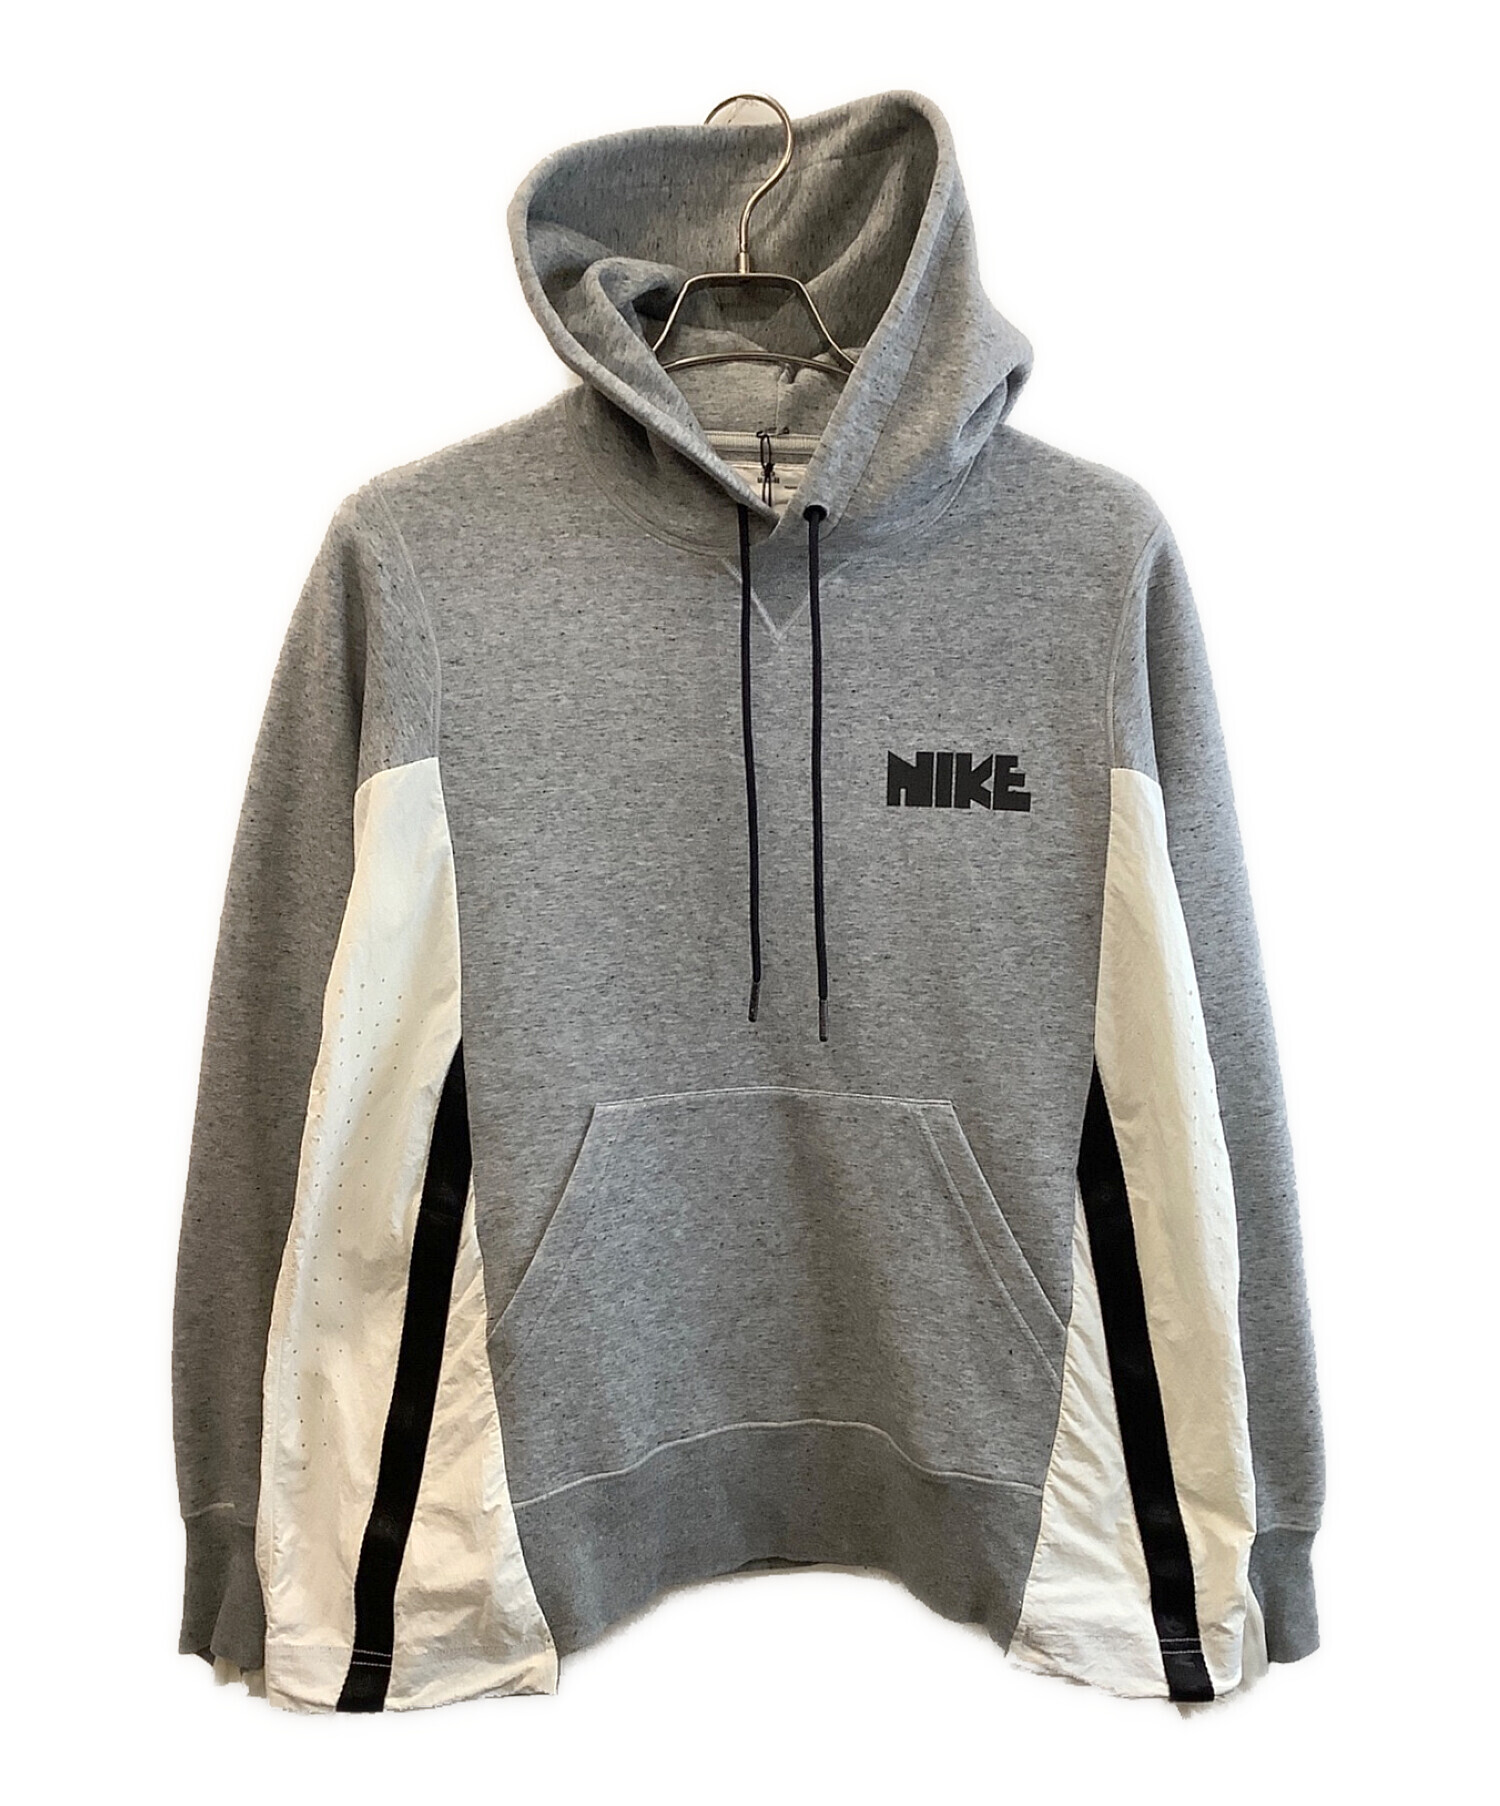 NIKE【新品】Sacai Nike サカイ ナイキ フーディ パーカー プルオーバー